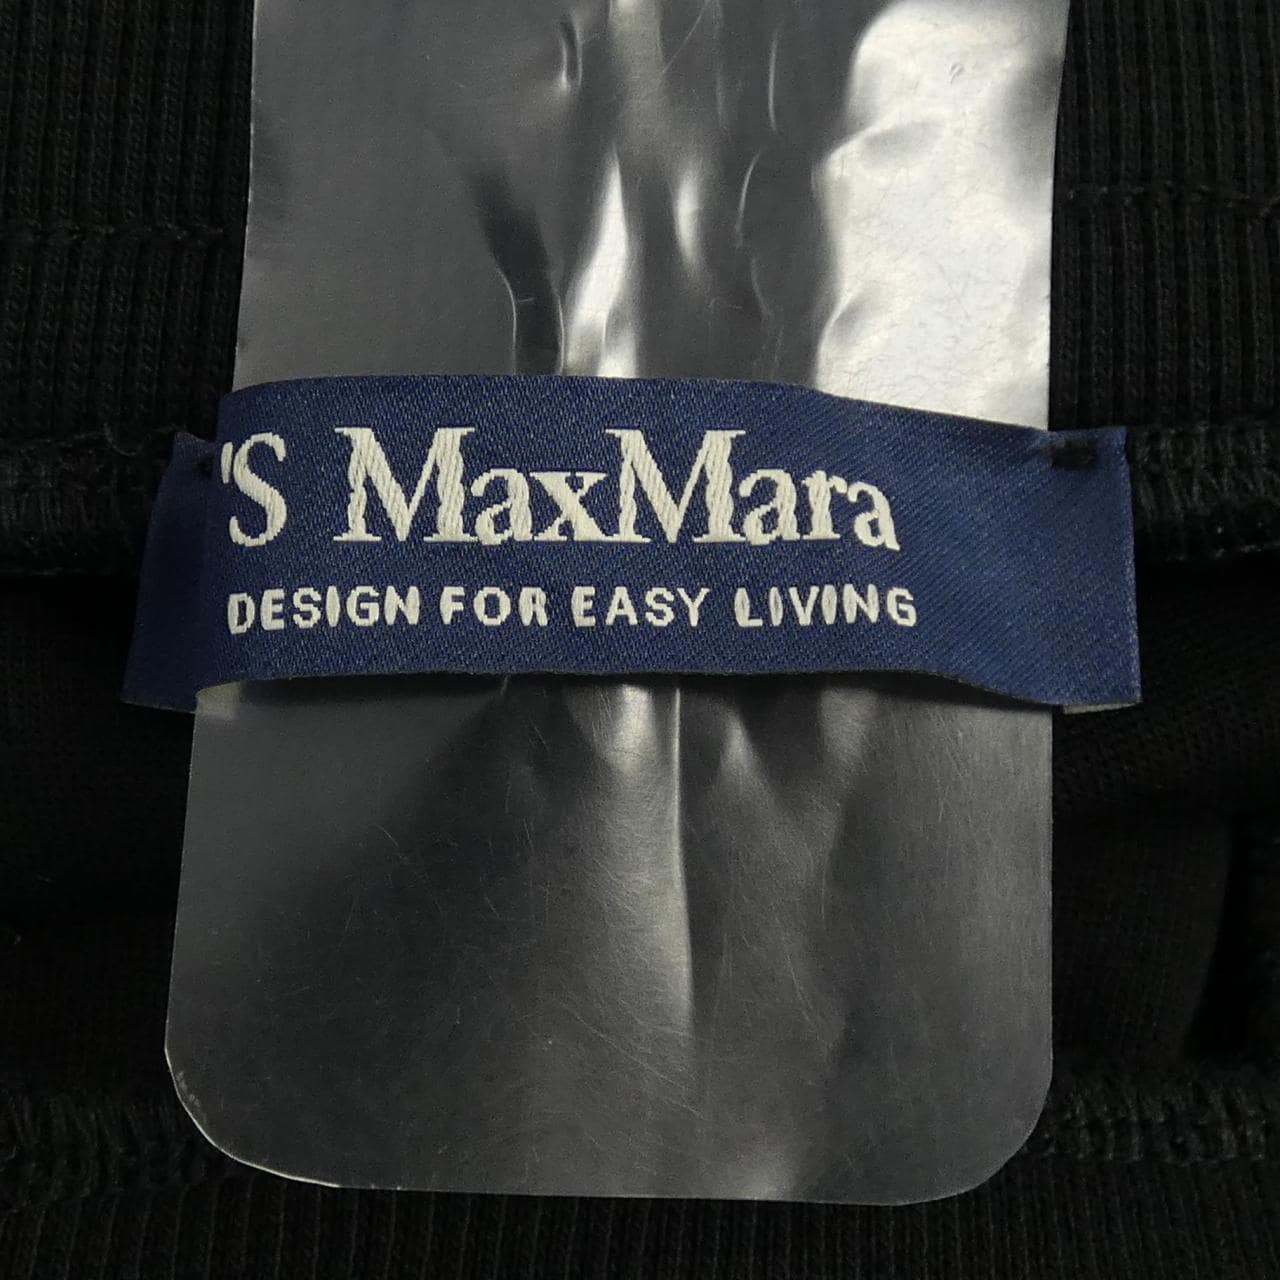 エスマックスマーラ 'S Max Mara パンツ